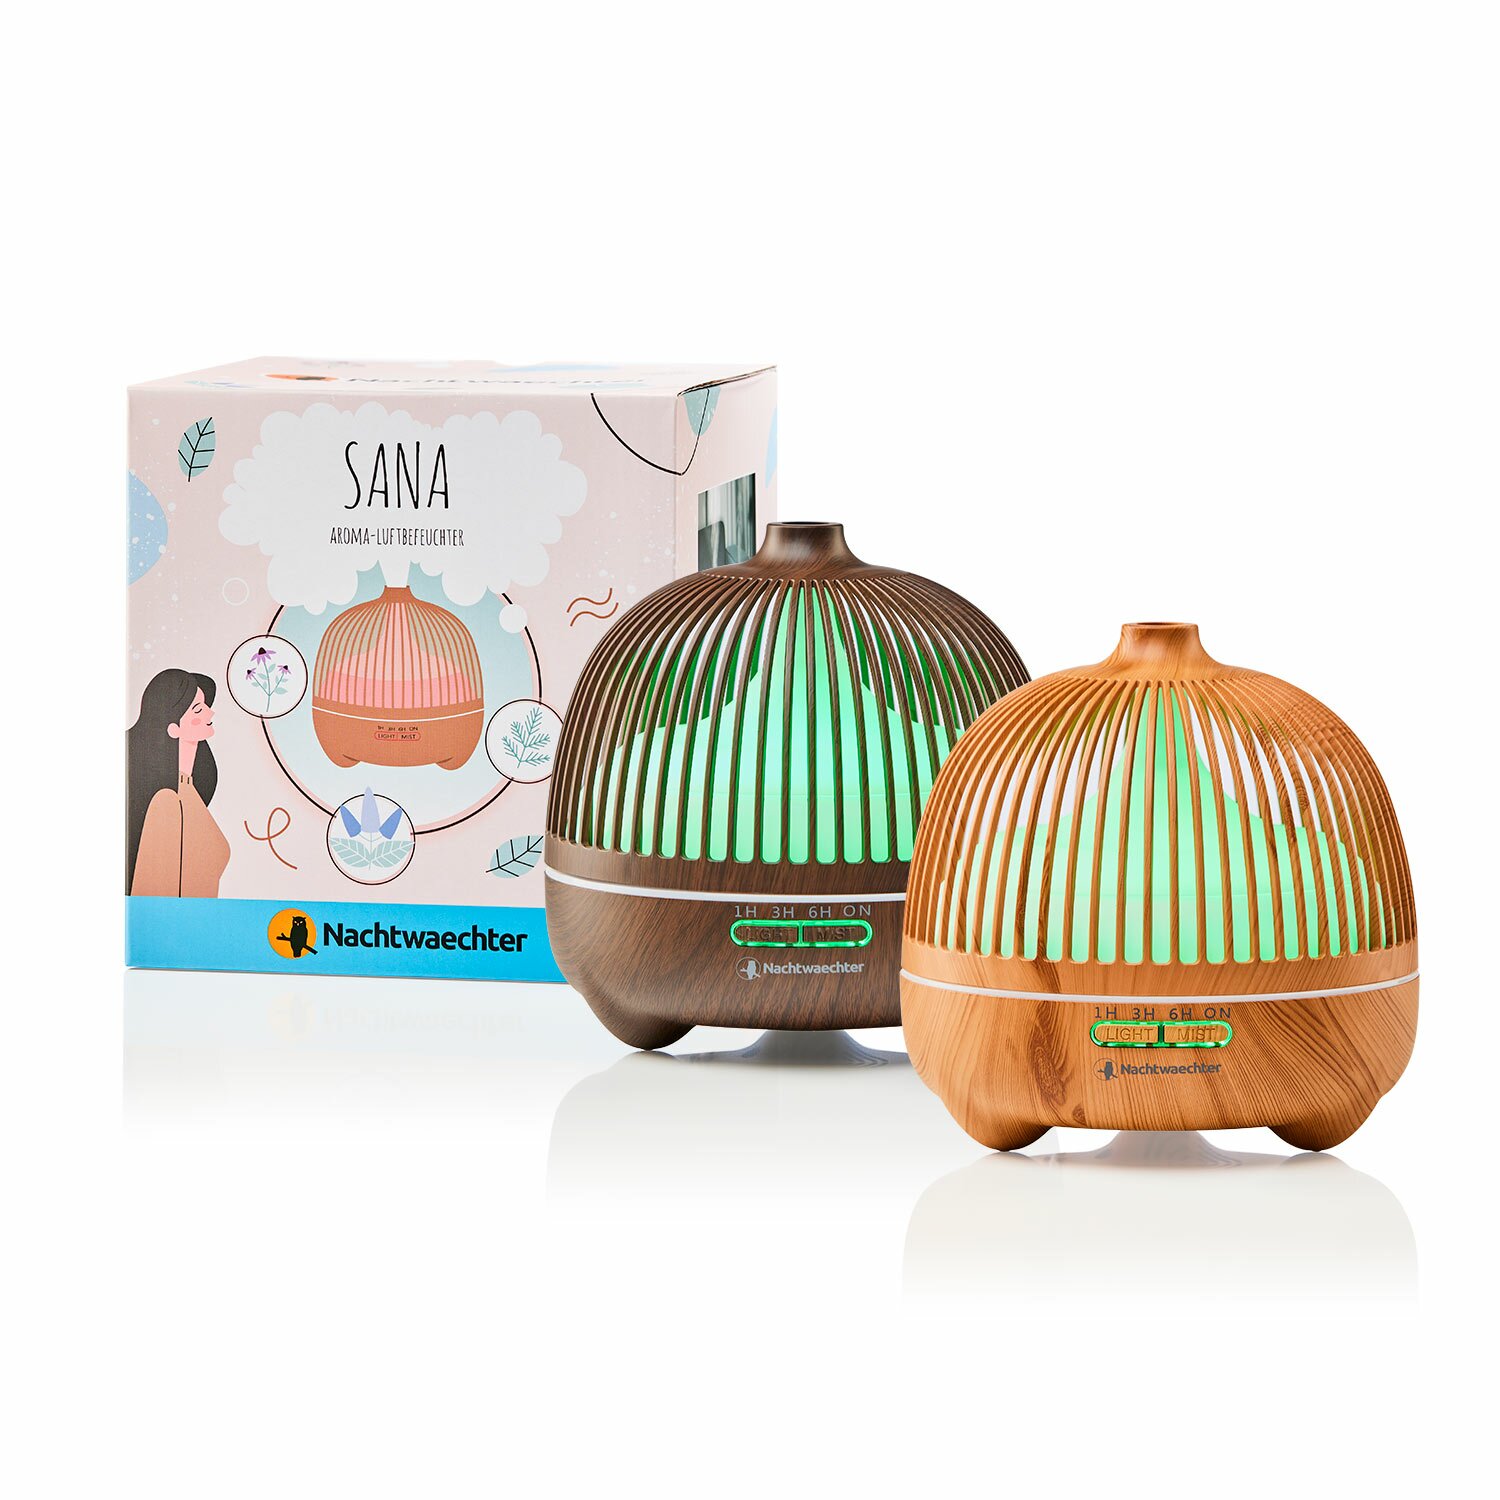 Sana - Top Aroma Diffusor mit Lichtwechsel - mit Holzdekoren, 49,90 €